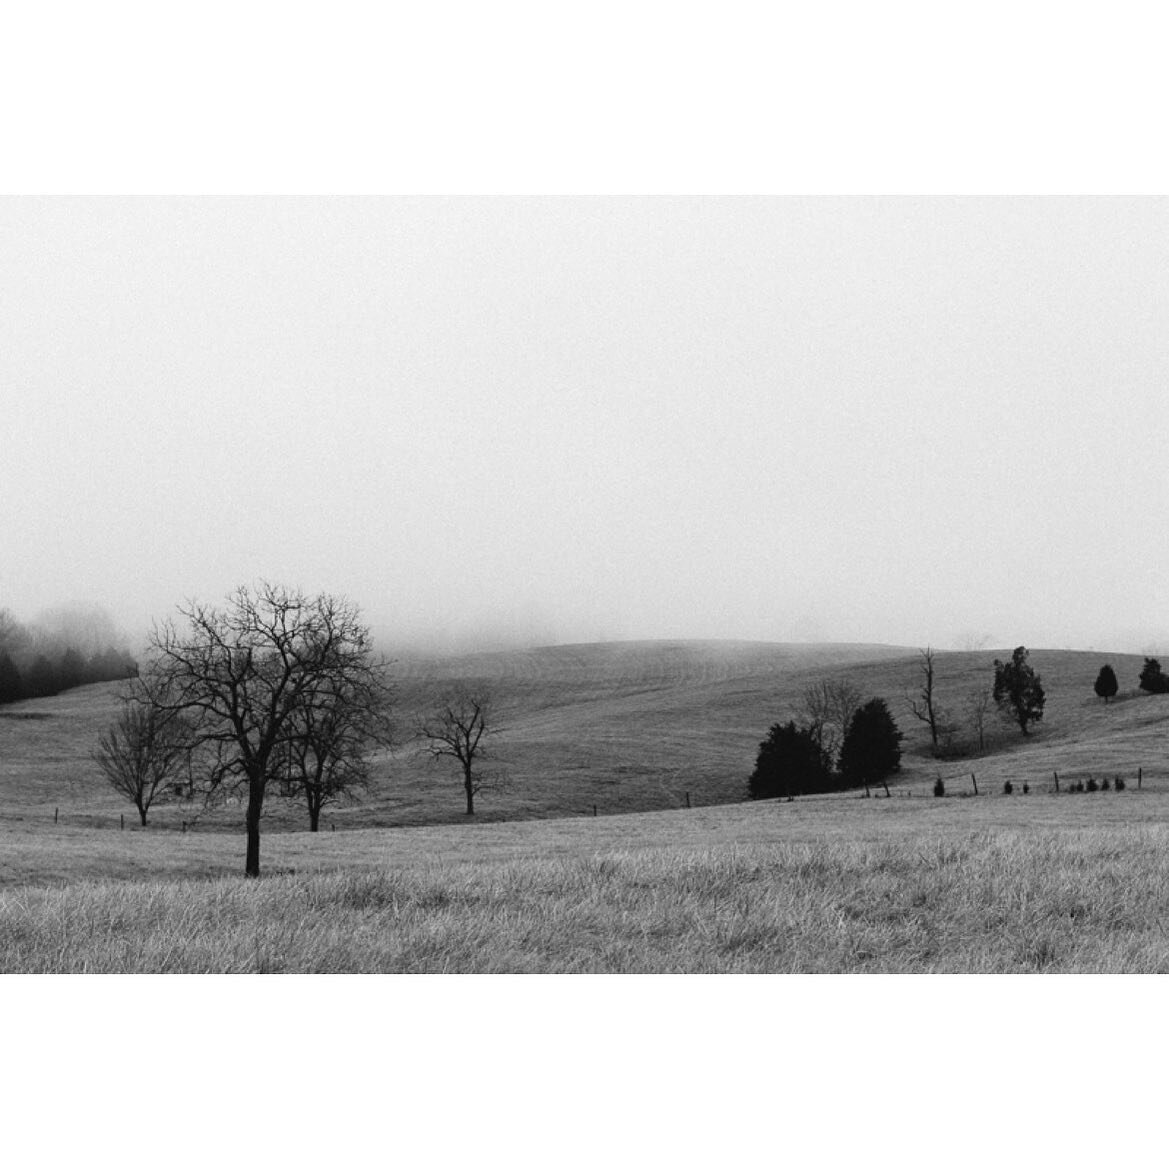 Morning Fog.

#blackandwhitephotography #landscape #landscapephotography #fog #trees #nature